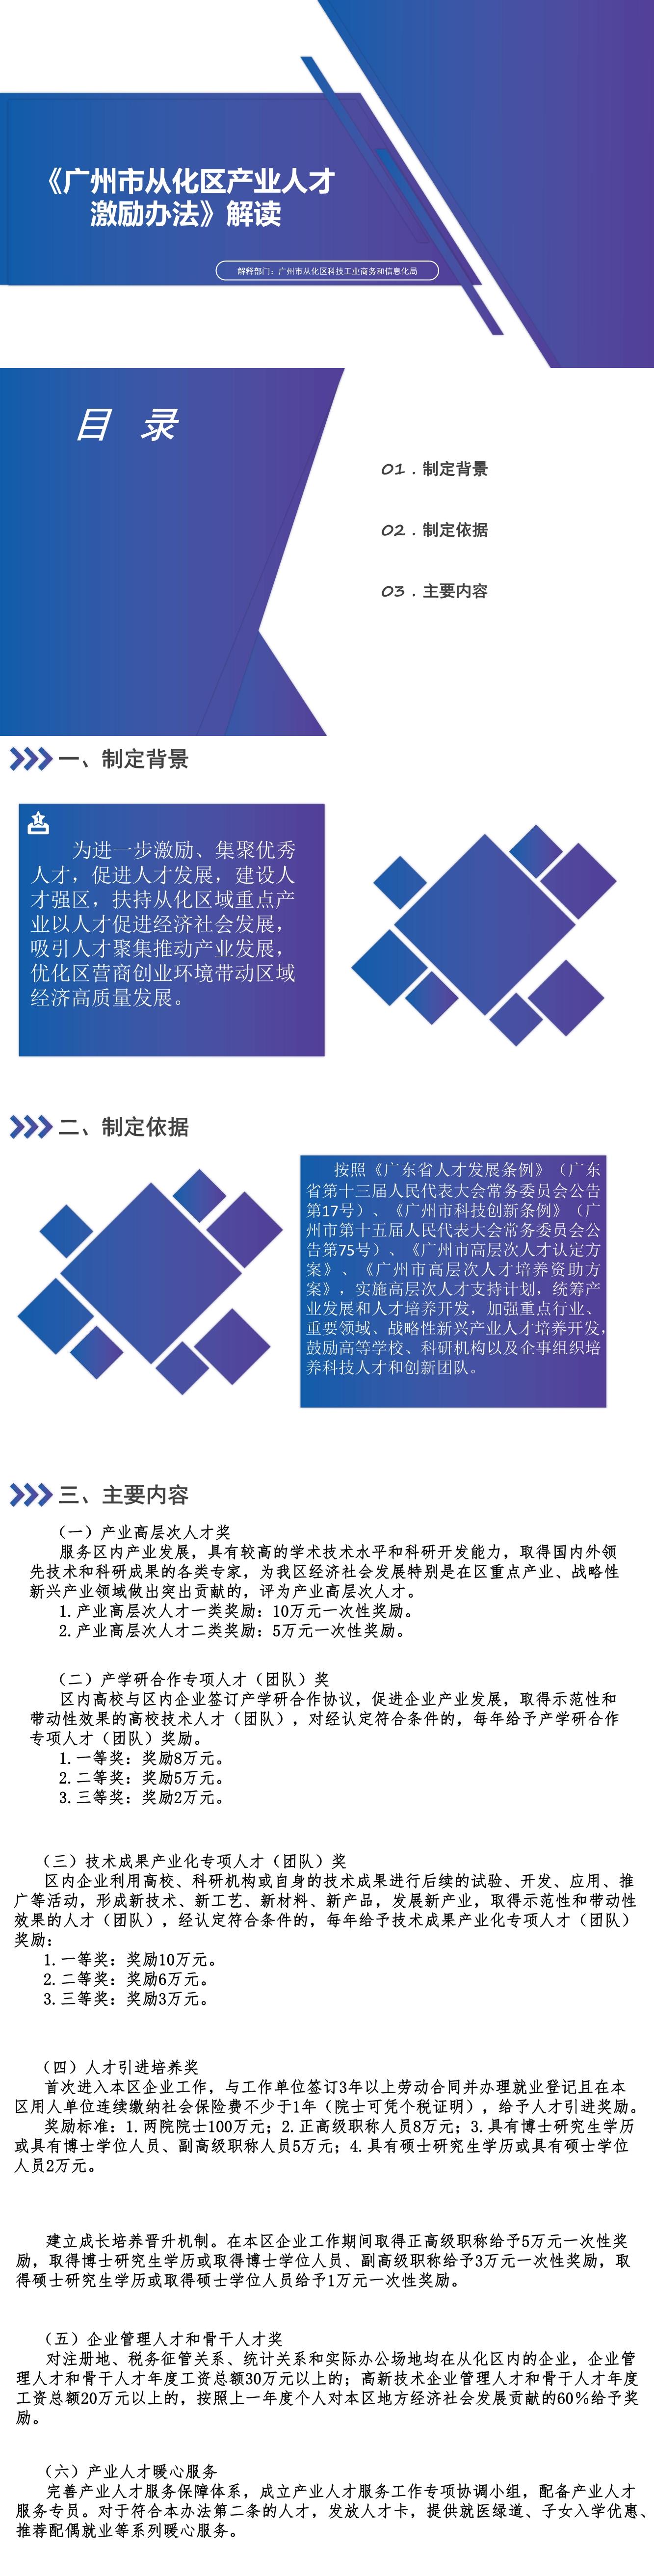 广州市从化区产业人才激励办法政策解读（20230417图片版）.jpg